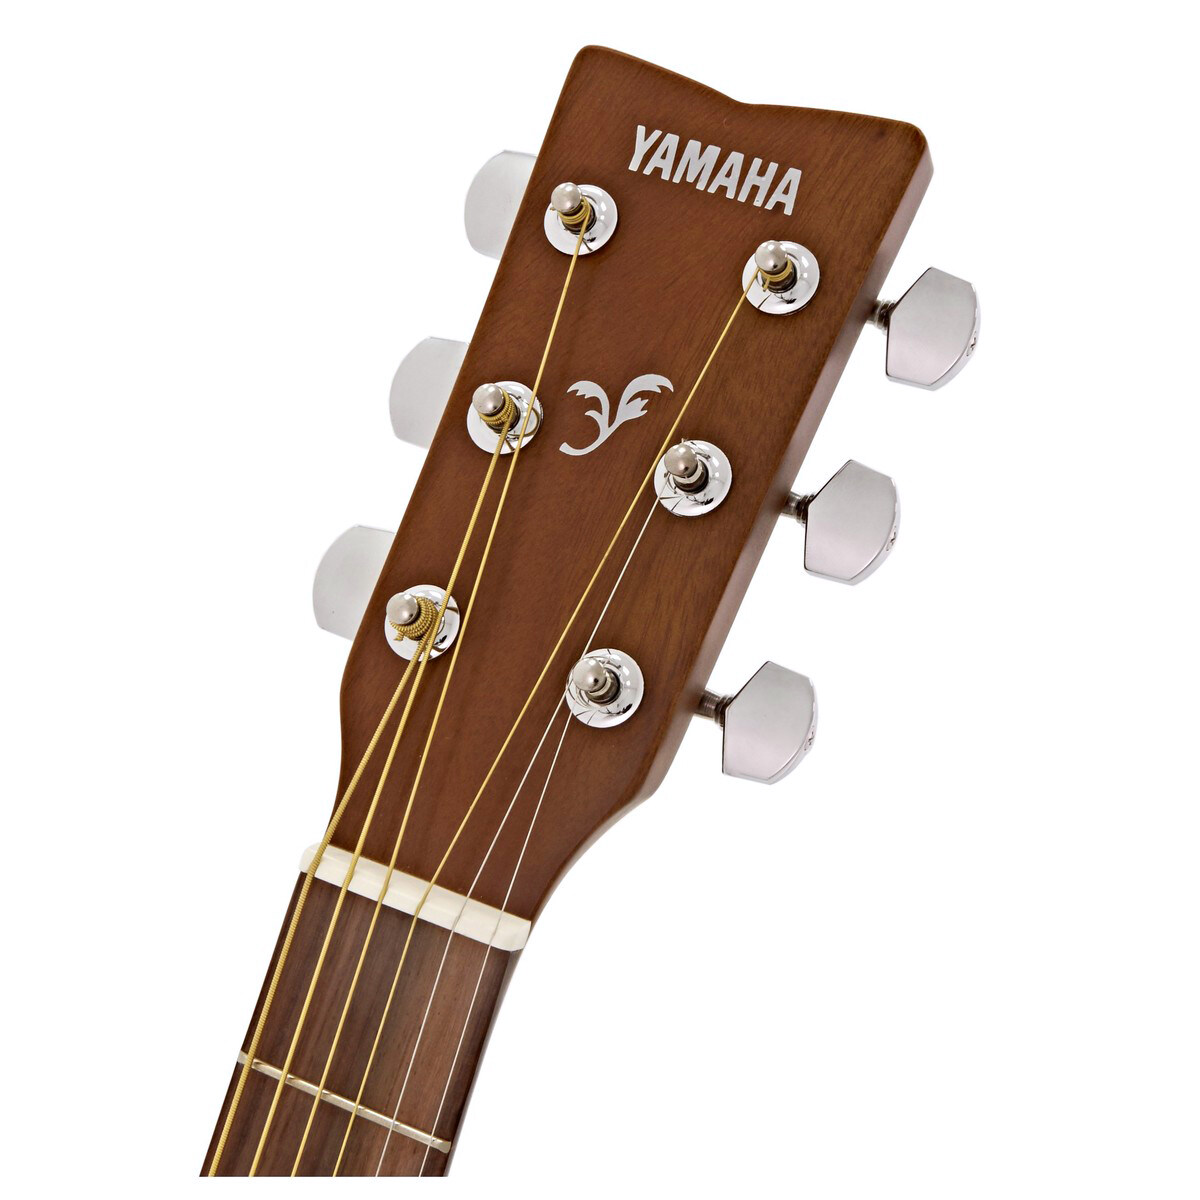 YAMAHA® F310 Acoustic Guitar กีตาร์โปร่ง Yamaha  41 นิ้ว ไม้สปรูซ รุ่น F310 +แถมฟรีกระเป่าของแท้ Yamaha ** กีตาร์โปร่งมือใหม่ขายดีที่สุด **